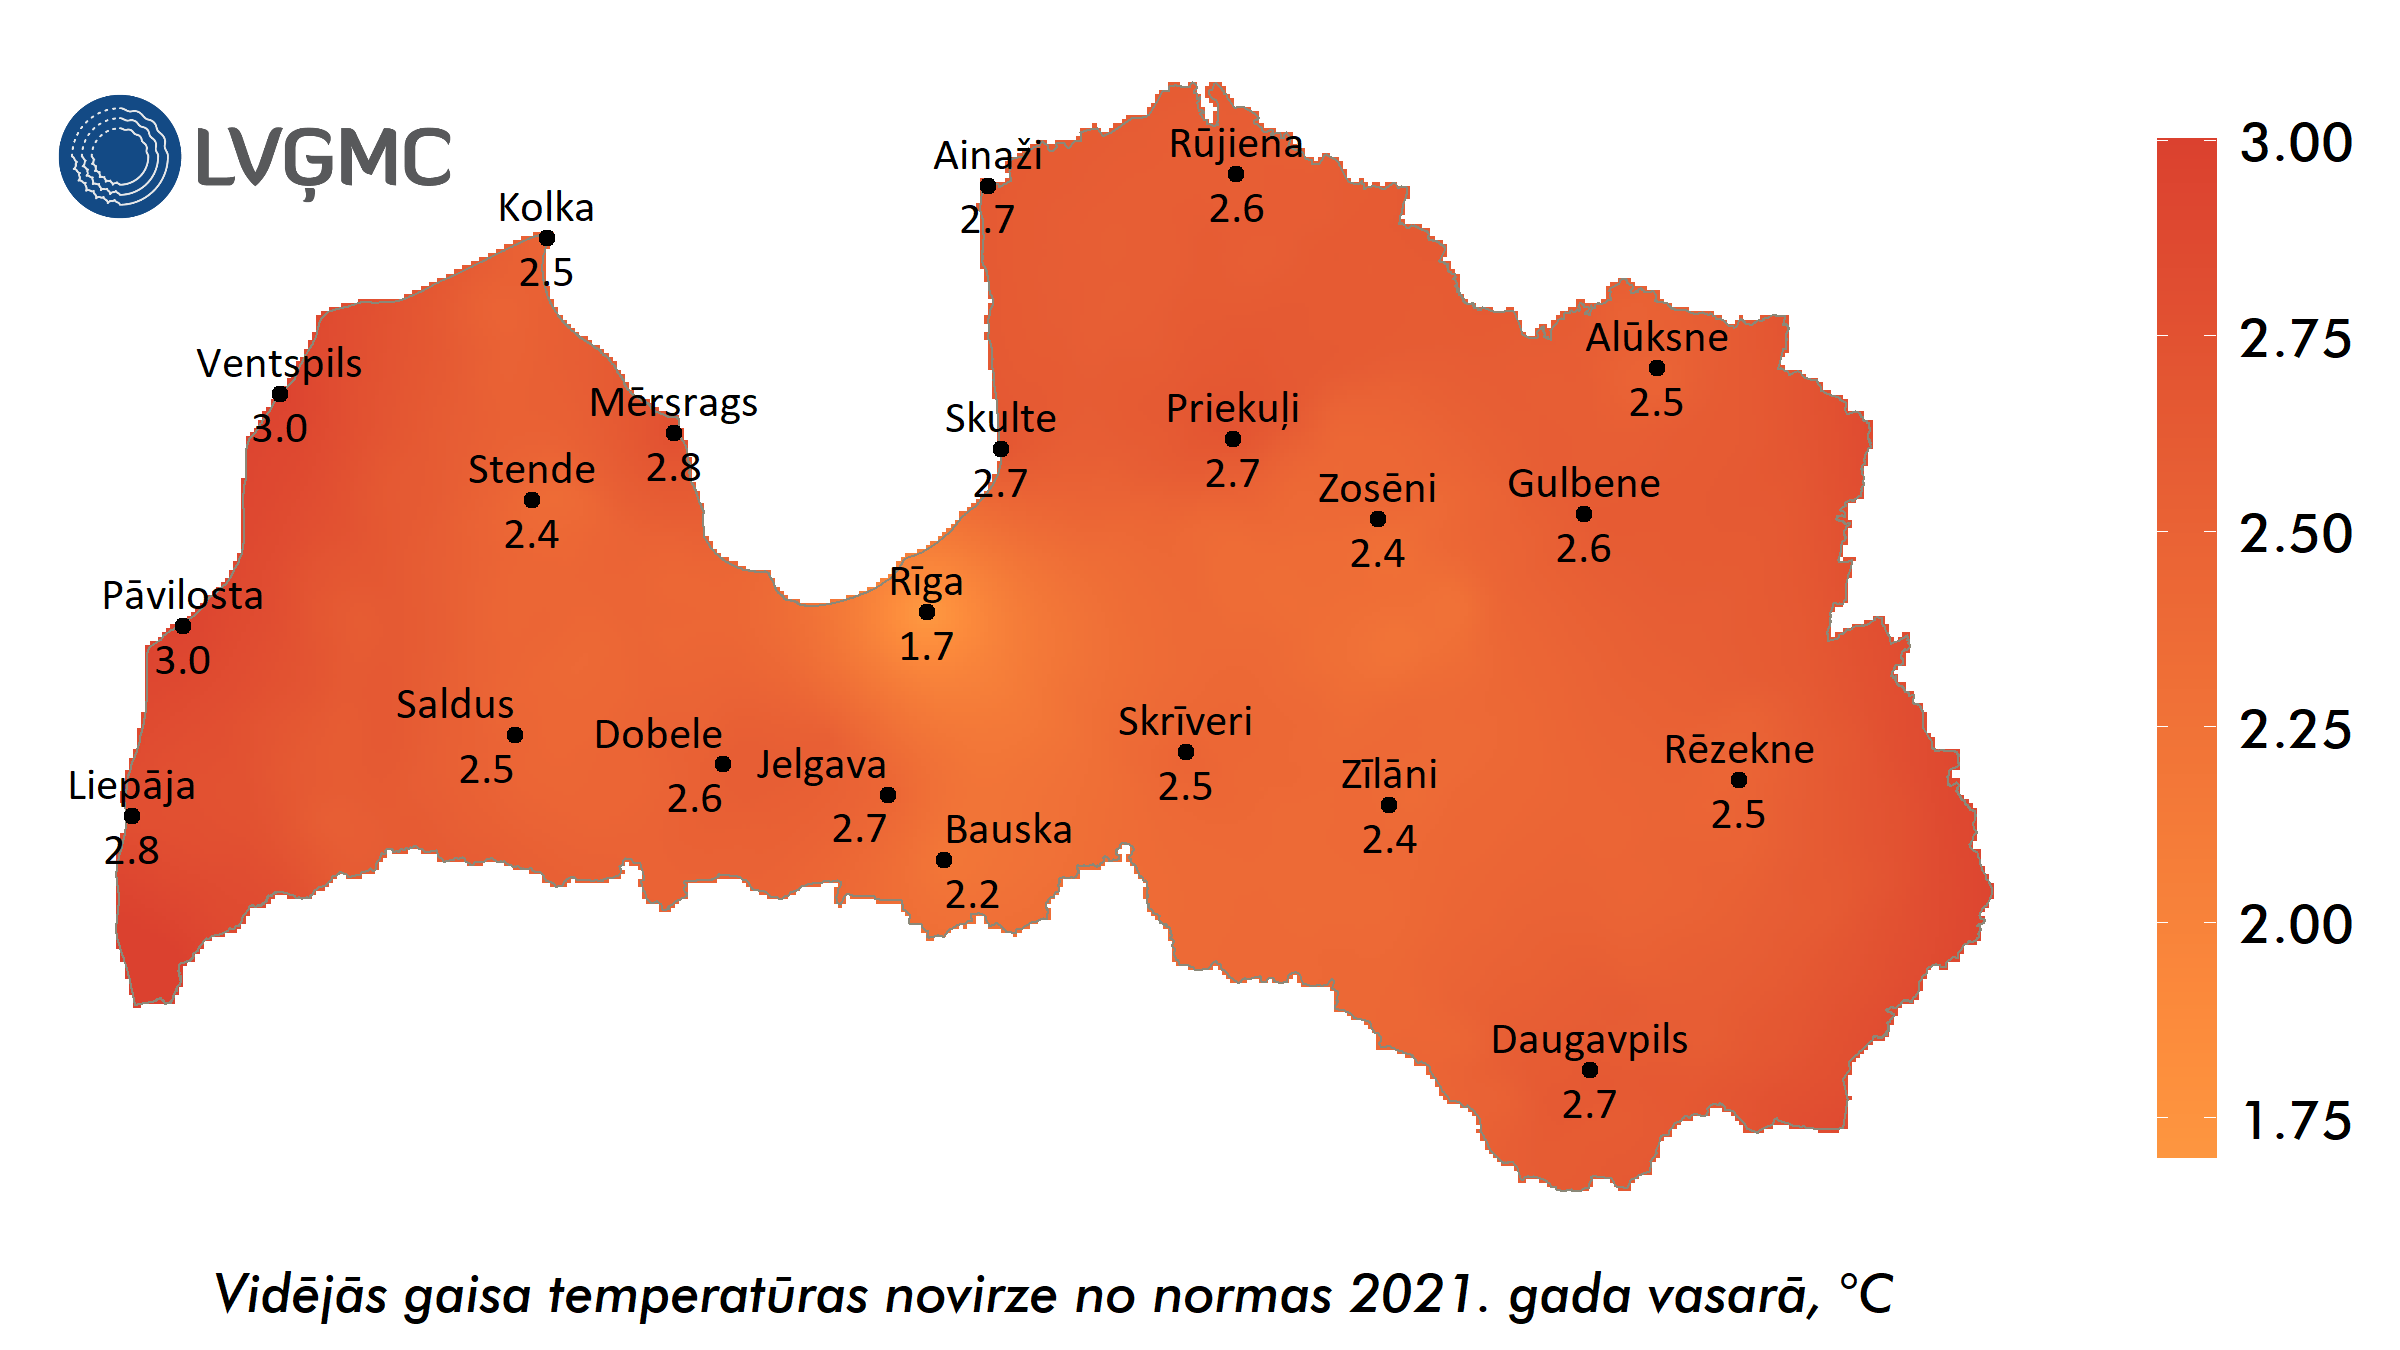 Vidējās gaisa temperatūras novirze no normas 2021. gada vasarā, °C